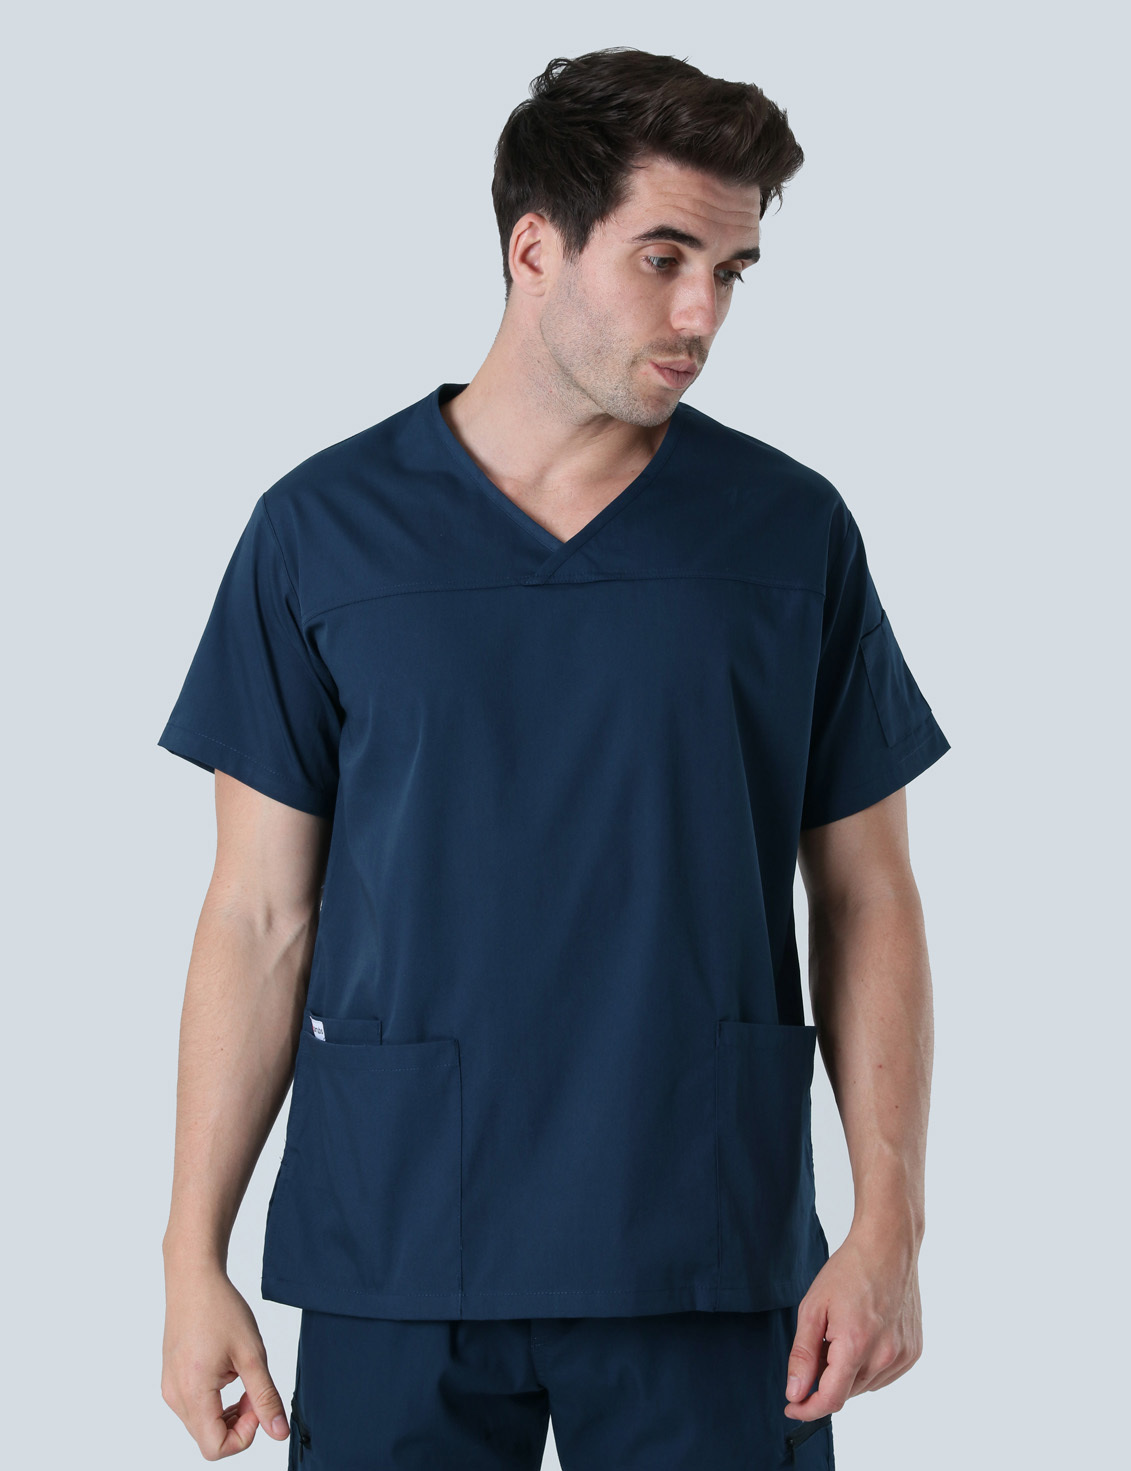 UQ Vets Gatton Senior Nurse Uniform Top Only Bundle (Men's Fit Solid Top in Navy incl Logos)